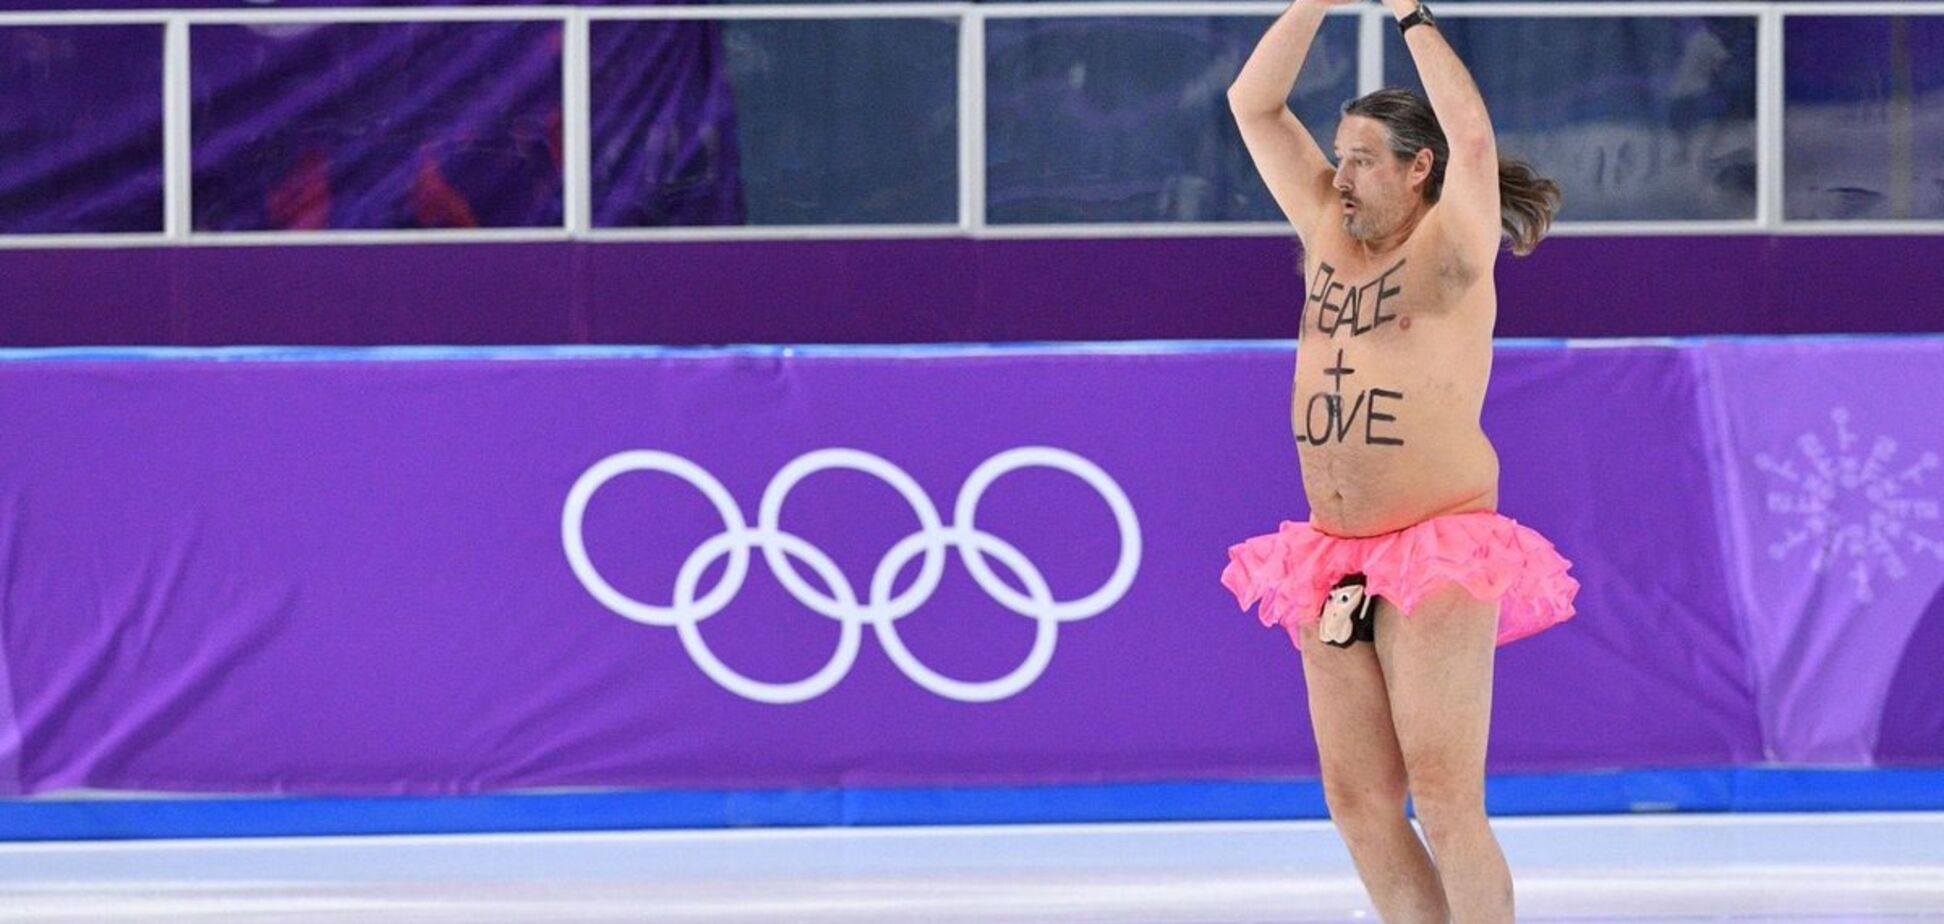 На Олимпиаде болельщик перелез через ограждения, разделся и устроил на льду бесстыдное шоу